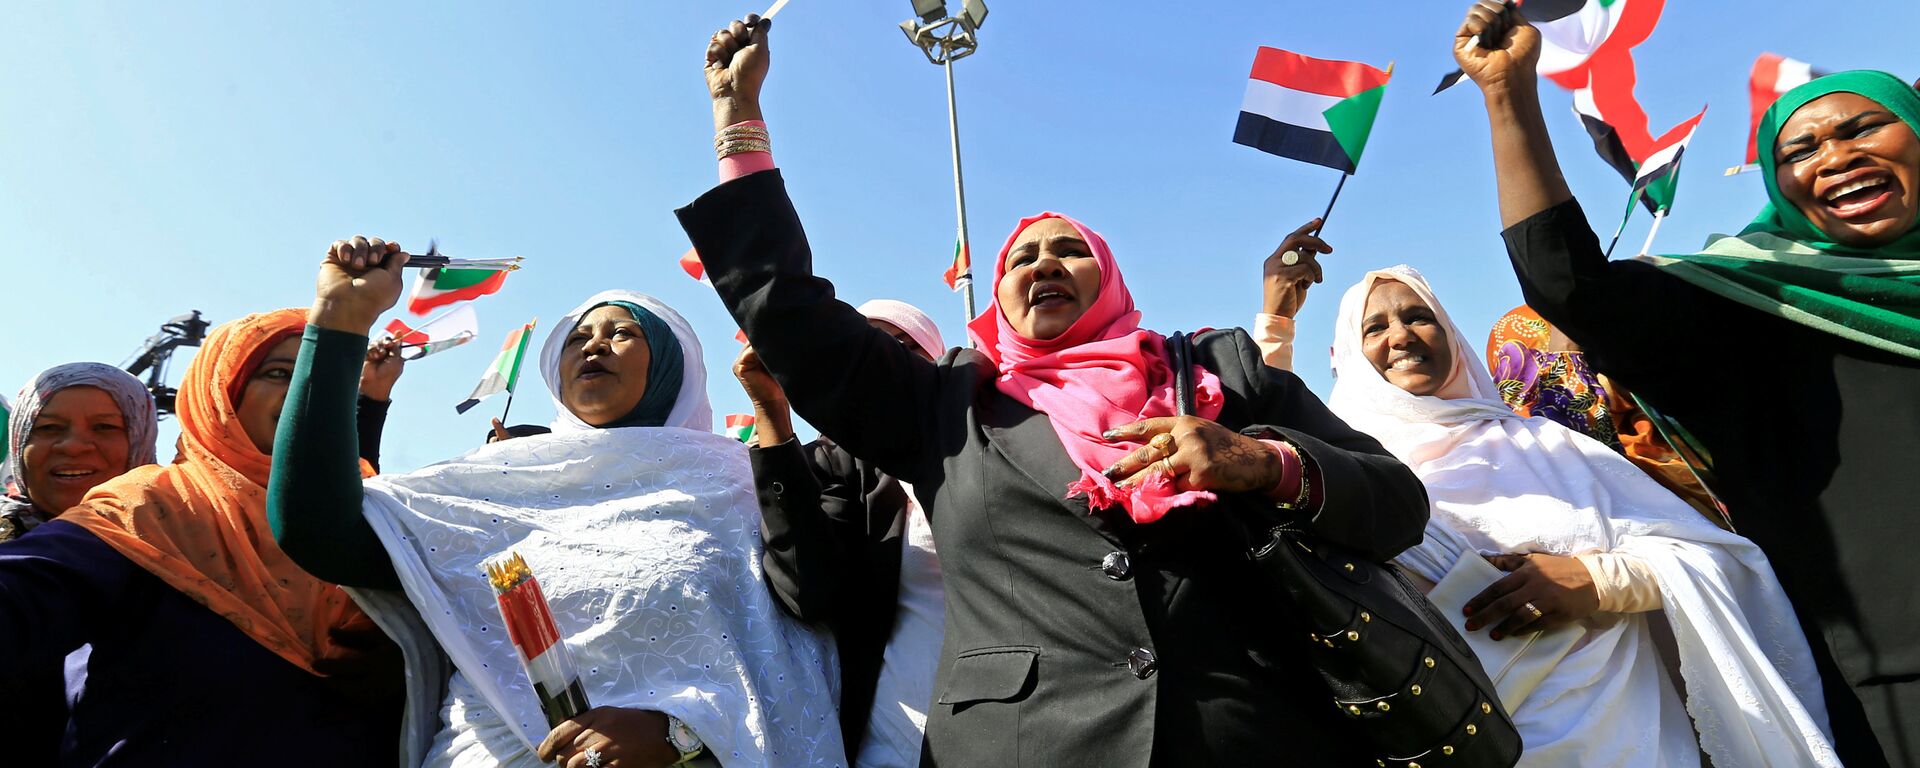 احتجاجات في السودان - مسيرات مؤيدة للرئيس السوداني عمر البشير في الخرطوم، 9 يناير/ كانون الثاني 2019 - سبوتنيك عربي, 1920, 23.12.2021